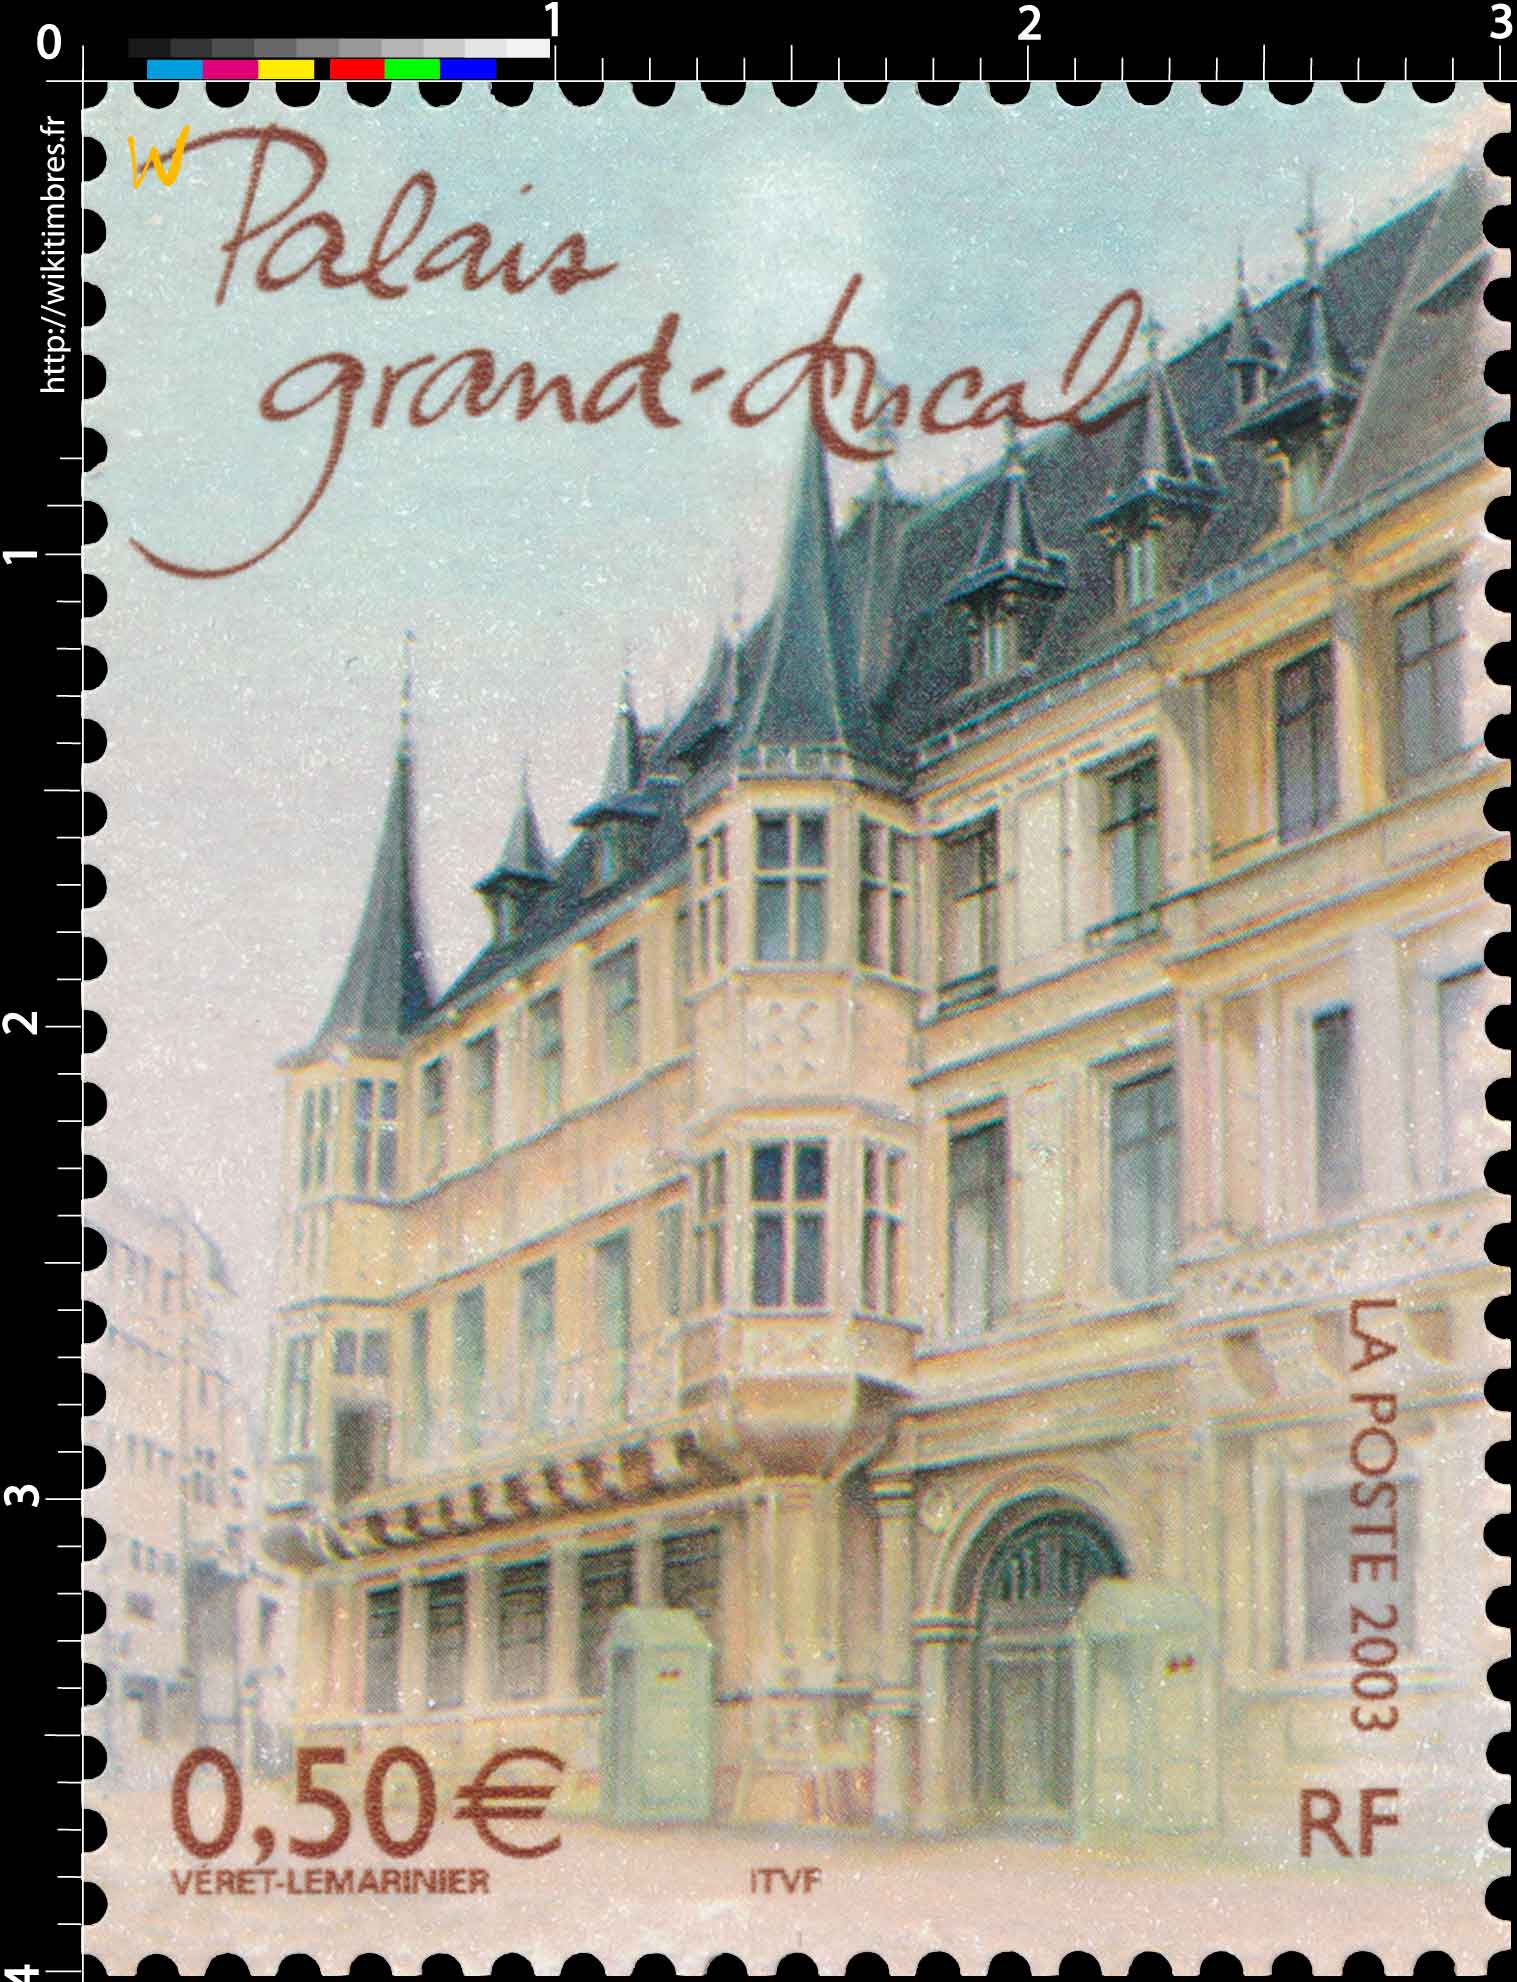 2003 Palais grand-ducal